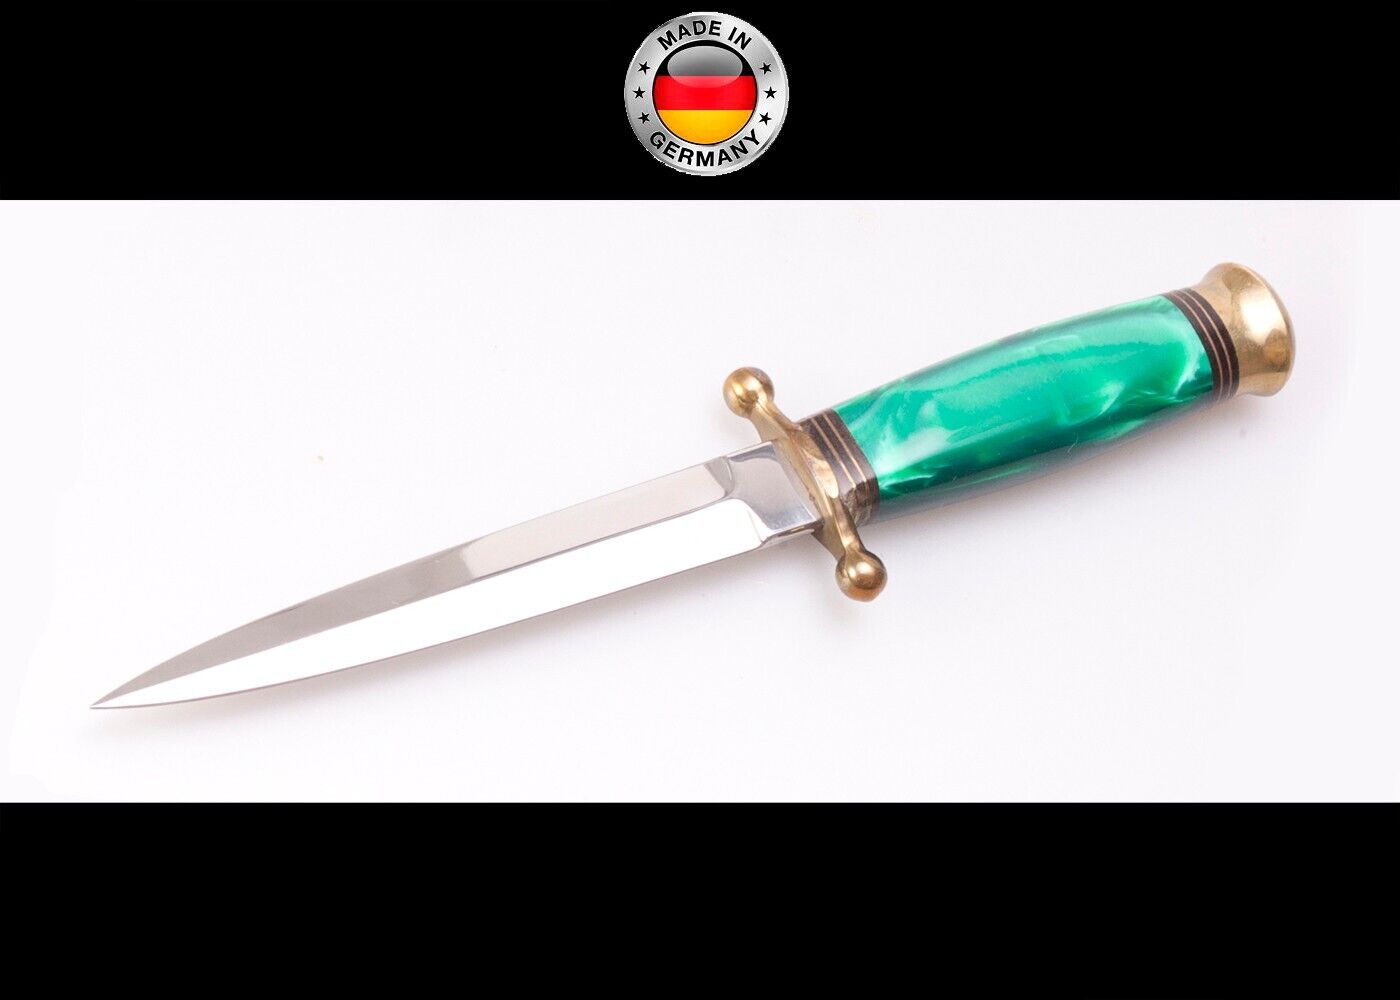 Vintage Handmade German Linder Solingen  Stiletto / Dagger Boot Knife